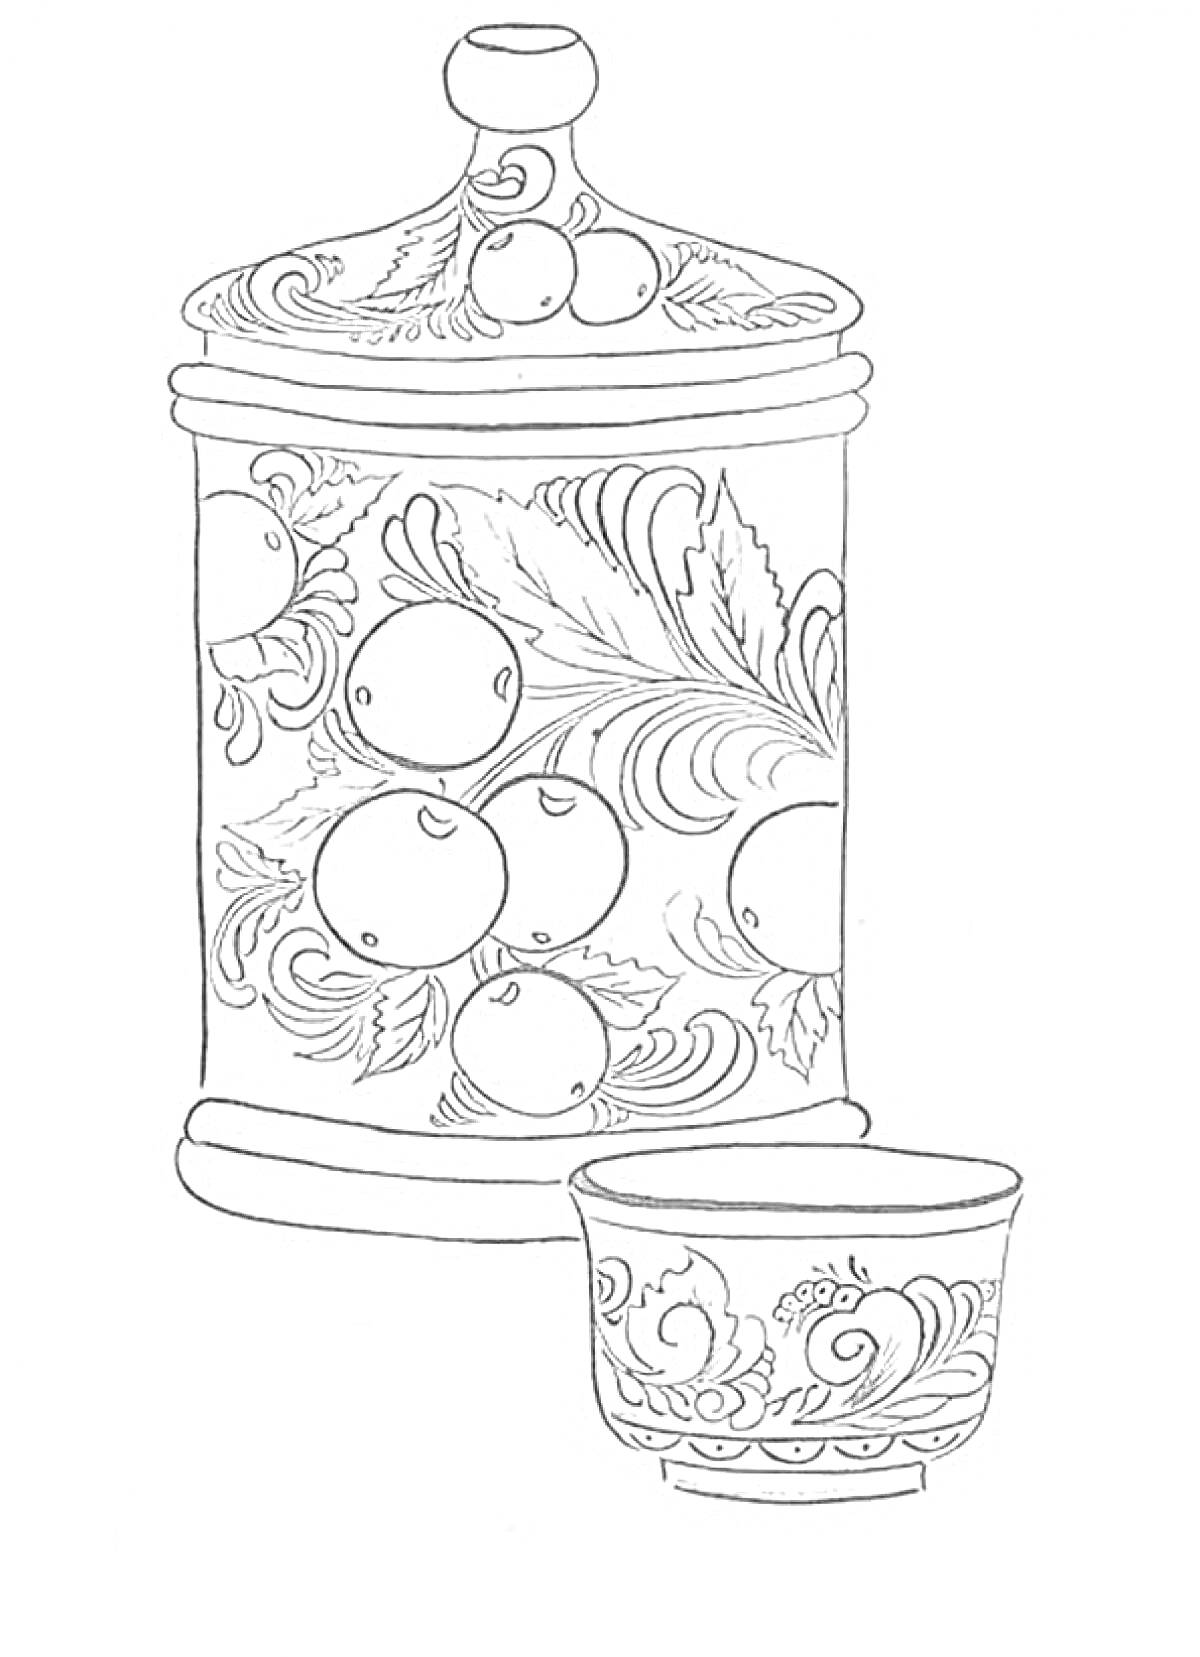 Раскраска Раскраска Хохлома с банкой и чашкой, украшенными цветами, ягодами и листвой